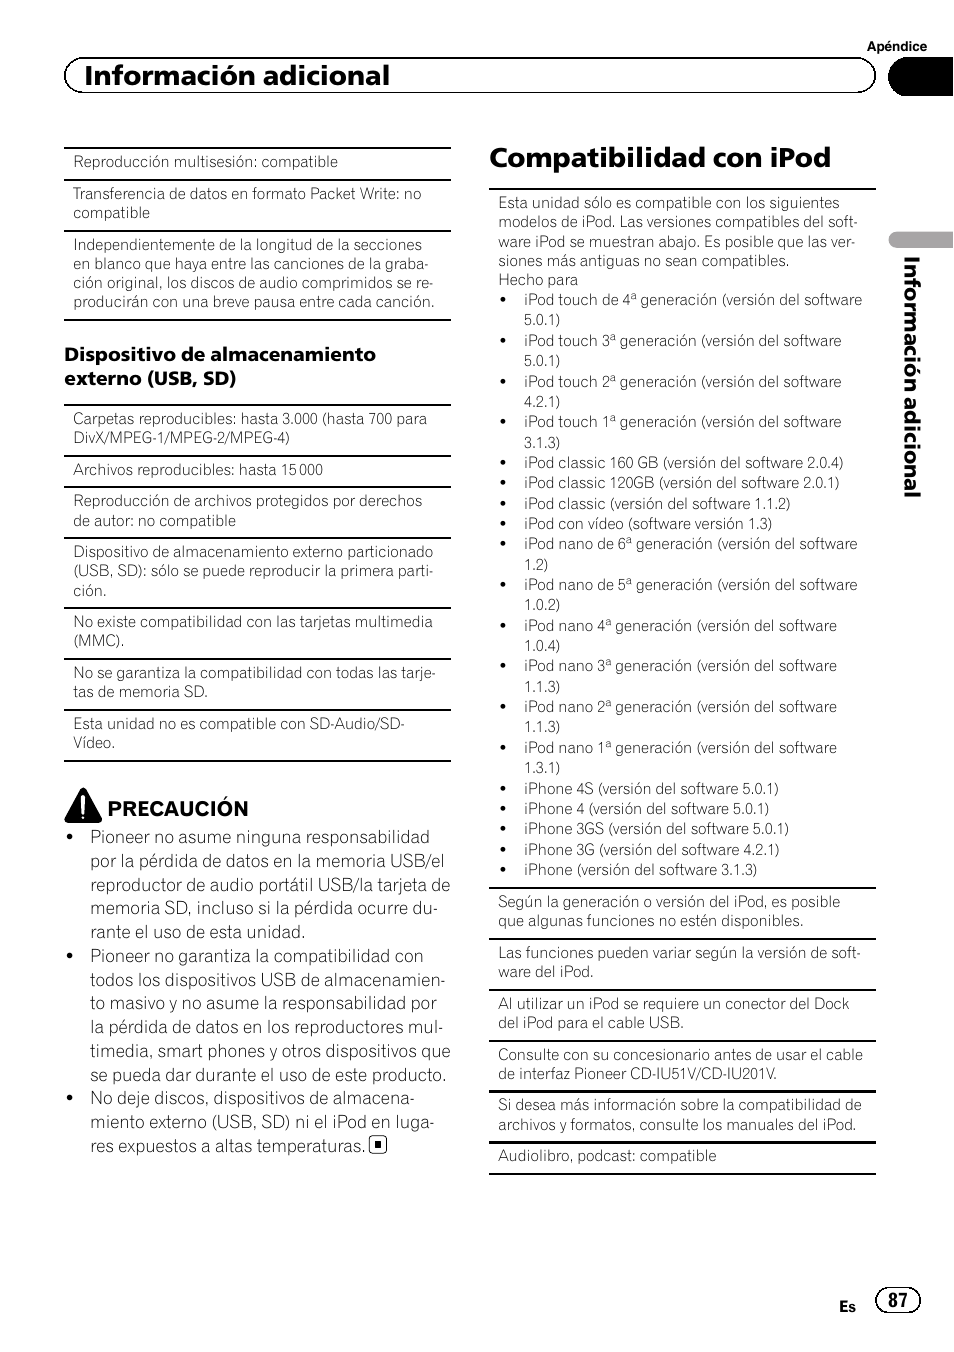 Compatibilidad con ipod, Información adicional, Precaución | Pioneer AVH-8400BT Manual del usuario | Página 87 / 100